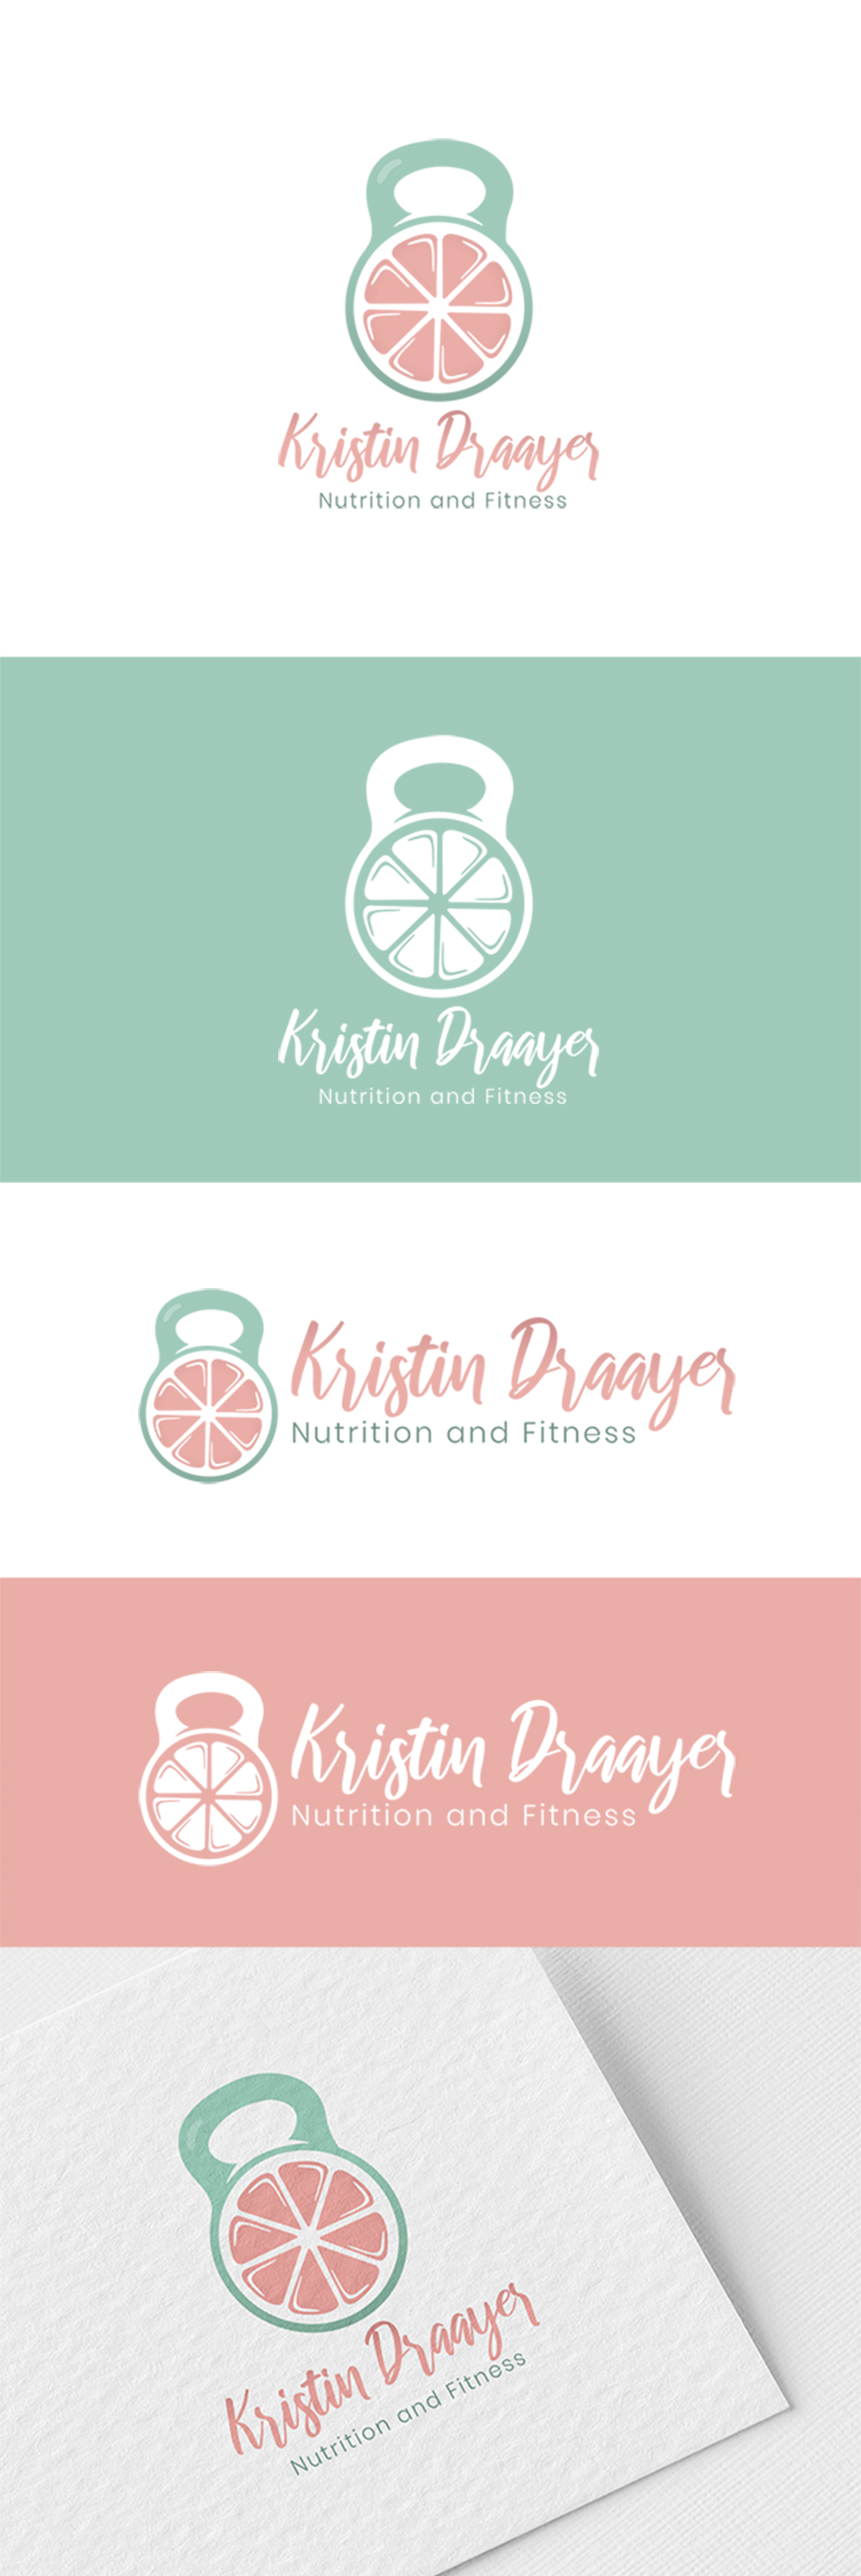 8 diet Logo design ideas